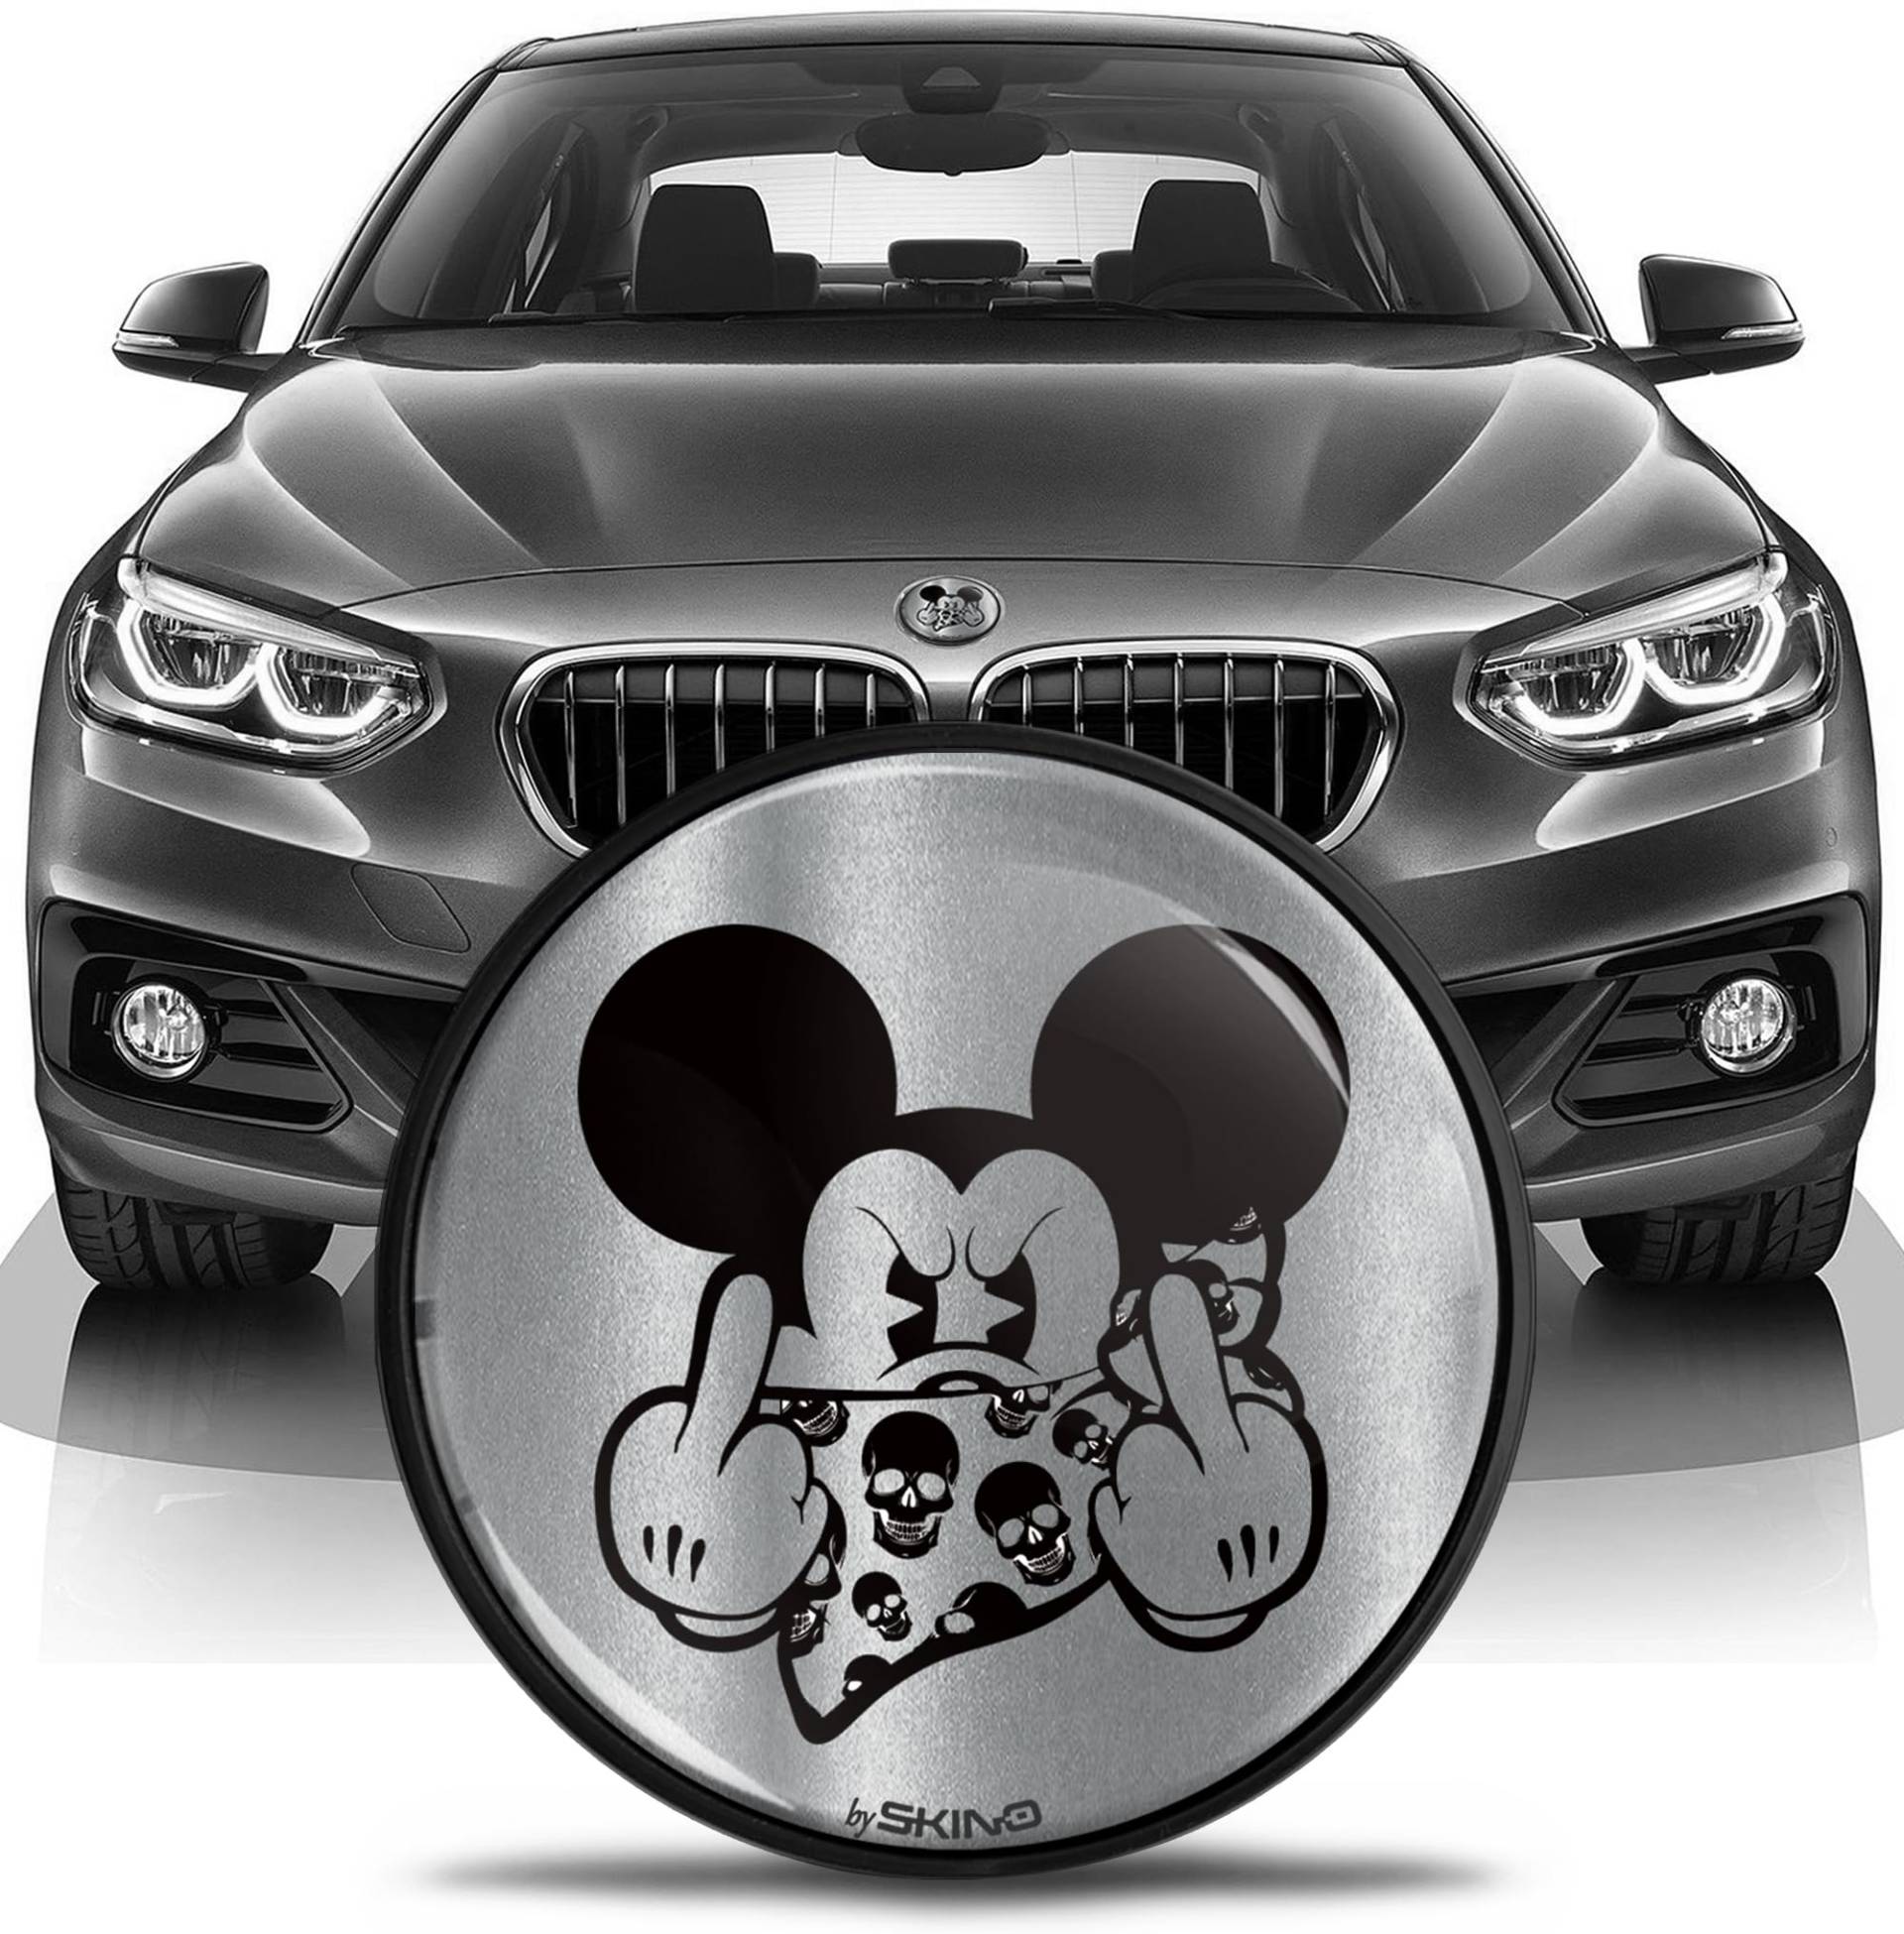 SkinoEu Kompatibel mit BMW Emblem 51147057794 für Motorhaube Kofferraum Plakette Abzeichen Heckklappe 82mm E81 E87 F07 GT F10 F11 F18 E63 E64 F06 GC F12 F13 Z4 E85 / E86 Silber Schwarz EN 2 von SkinoEu